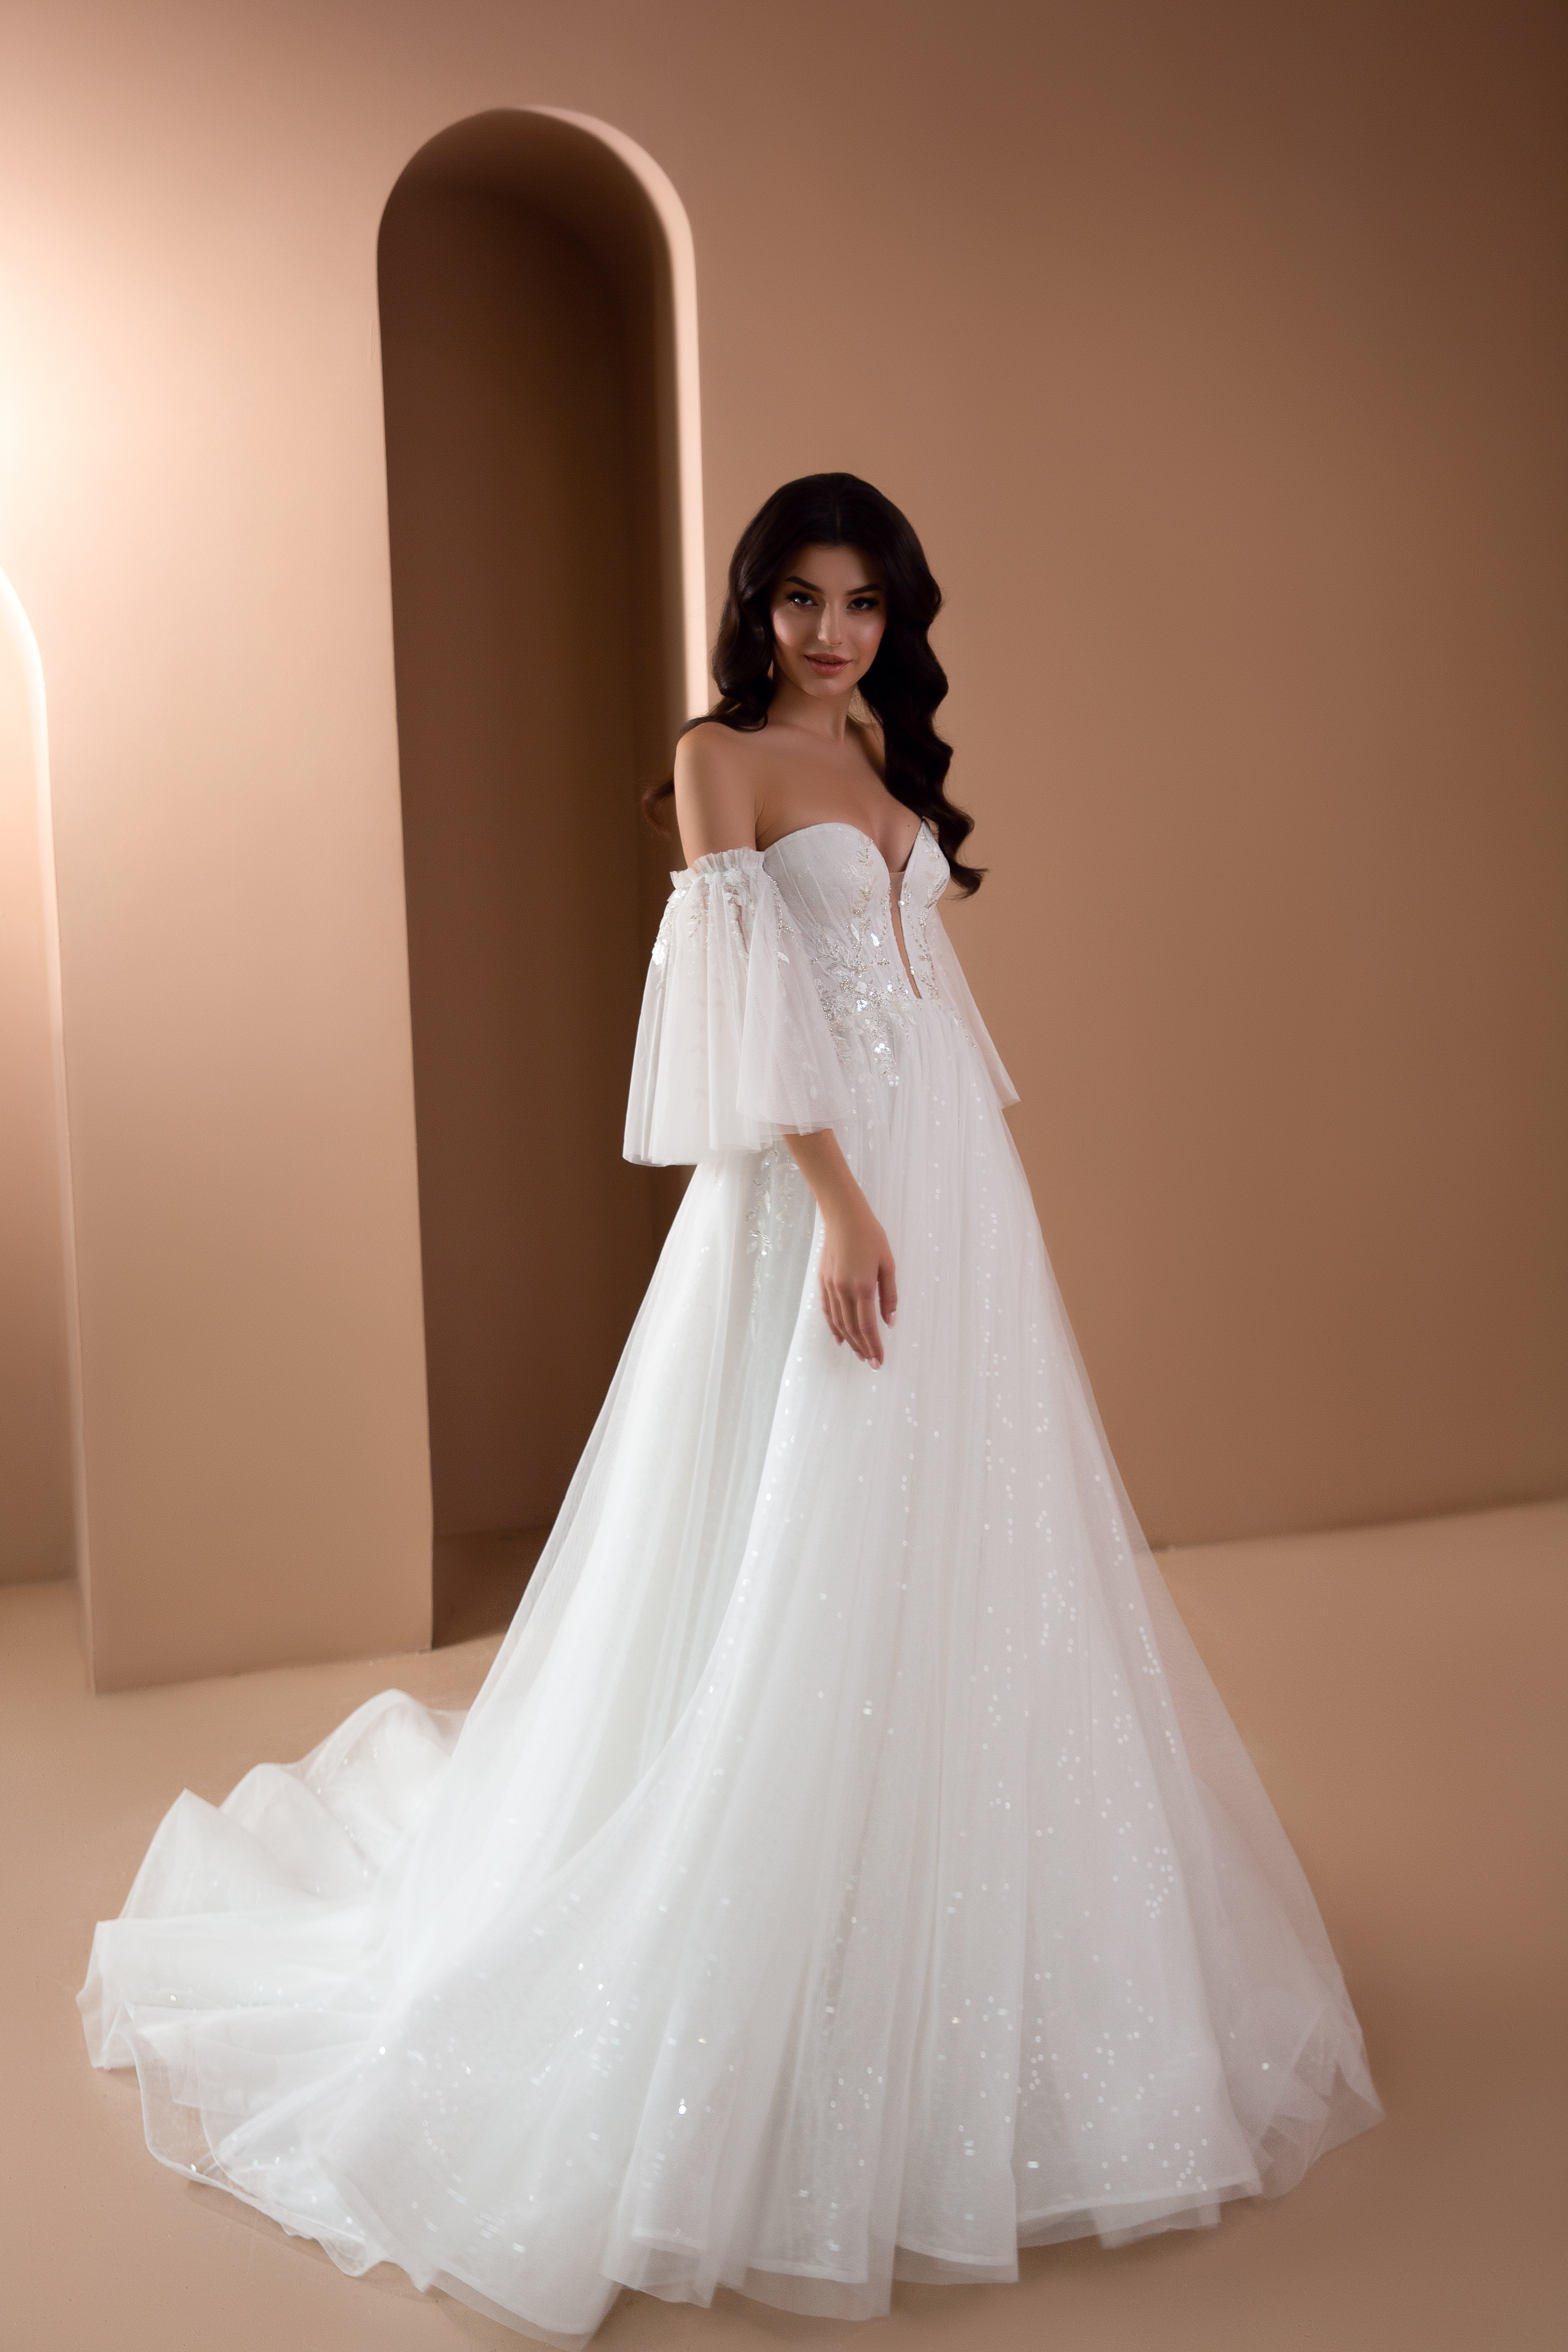 Купить свадебное платье Женивьева Армония из коллекции 2021 года в салоне «Мэри Трюфель»